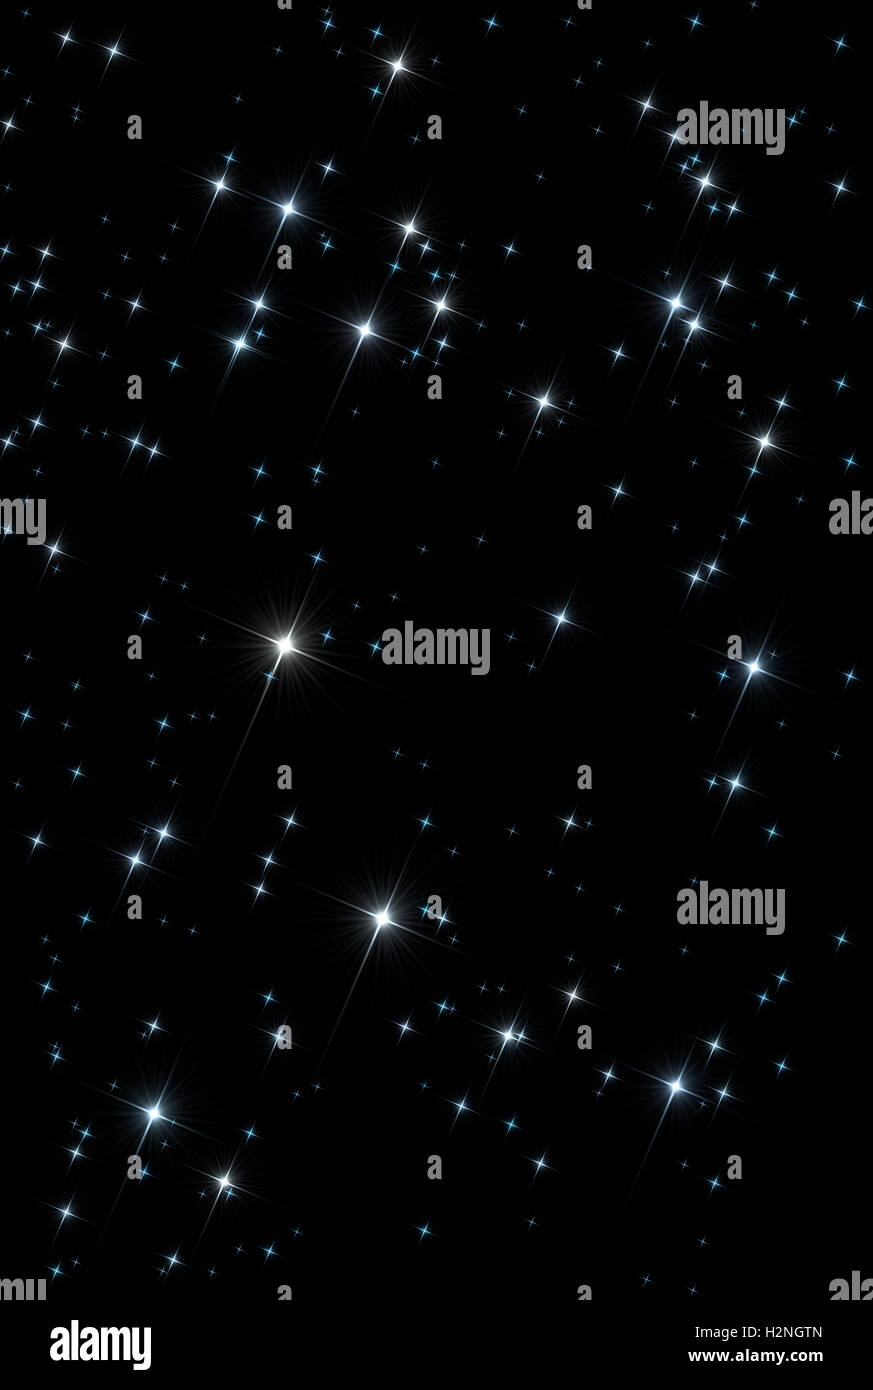 Résumé de l'univers de l'espace contexte : configuration des lumières scintillantes étoiles scintillantes sur la toile noire isolée. Banque D'Images